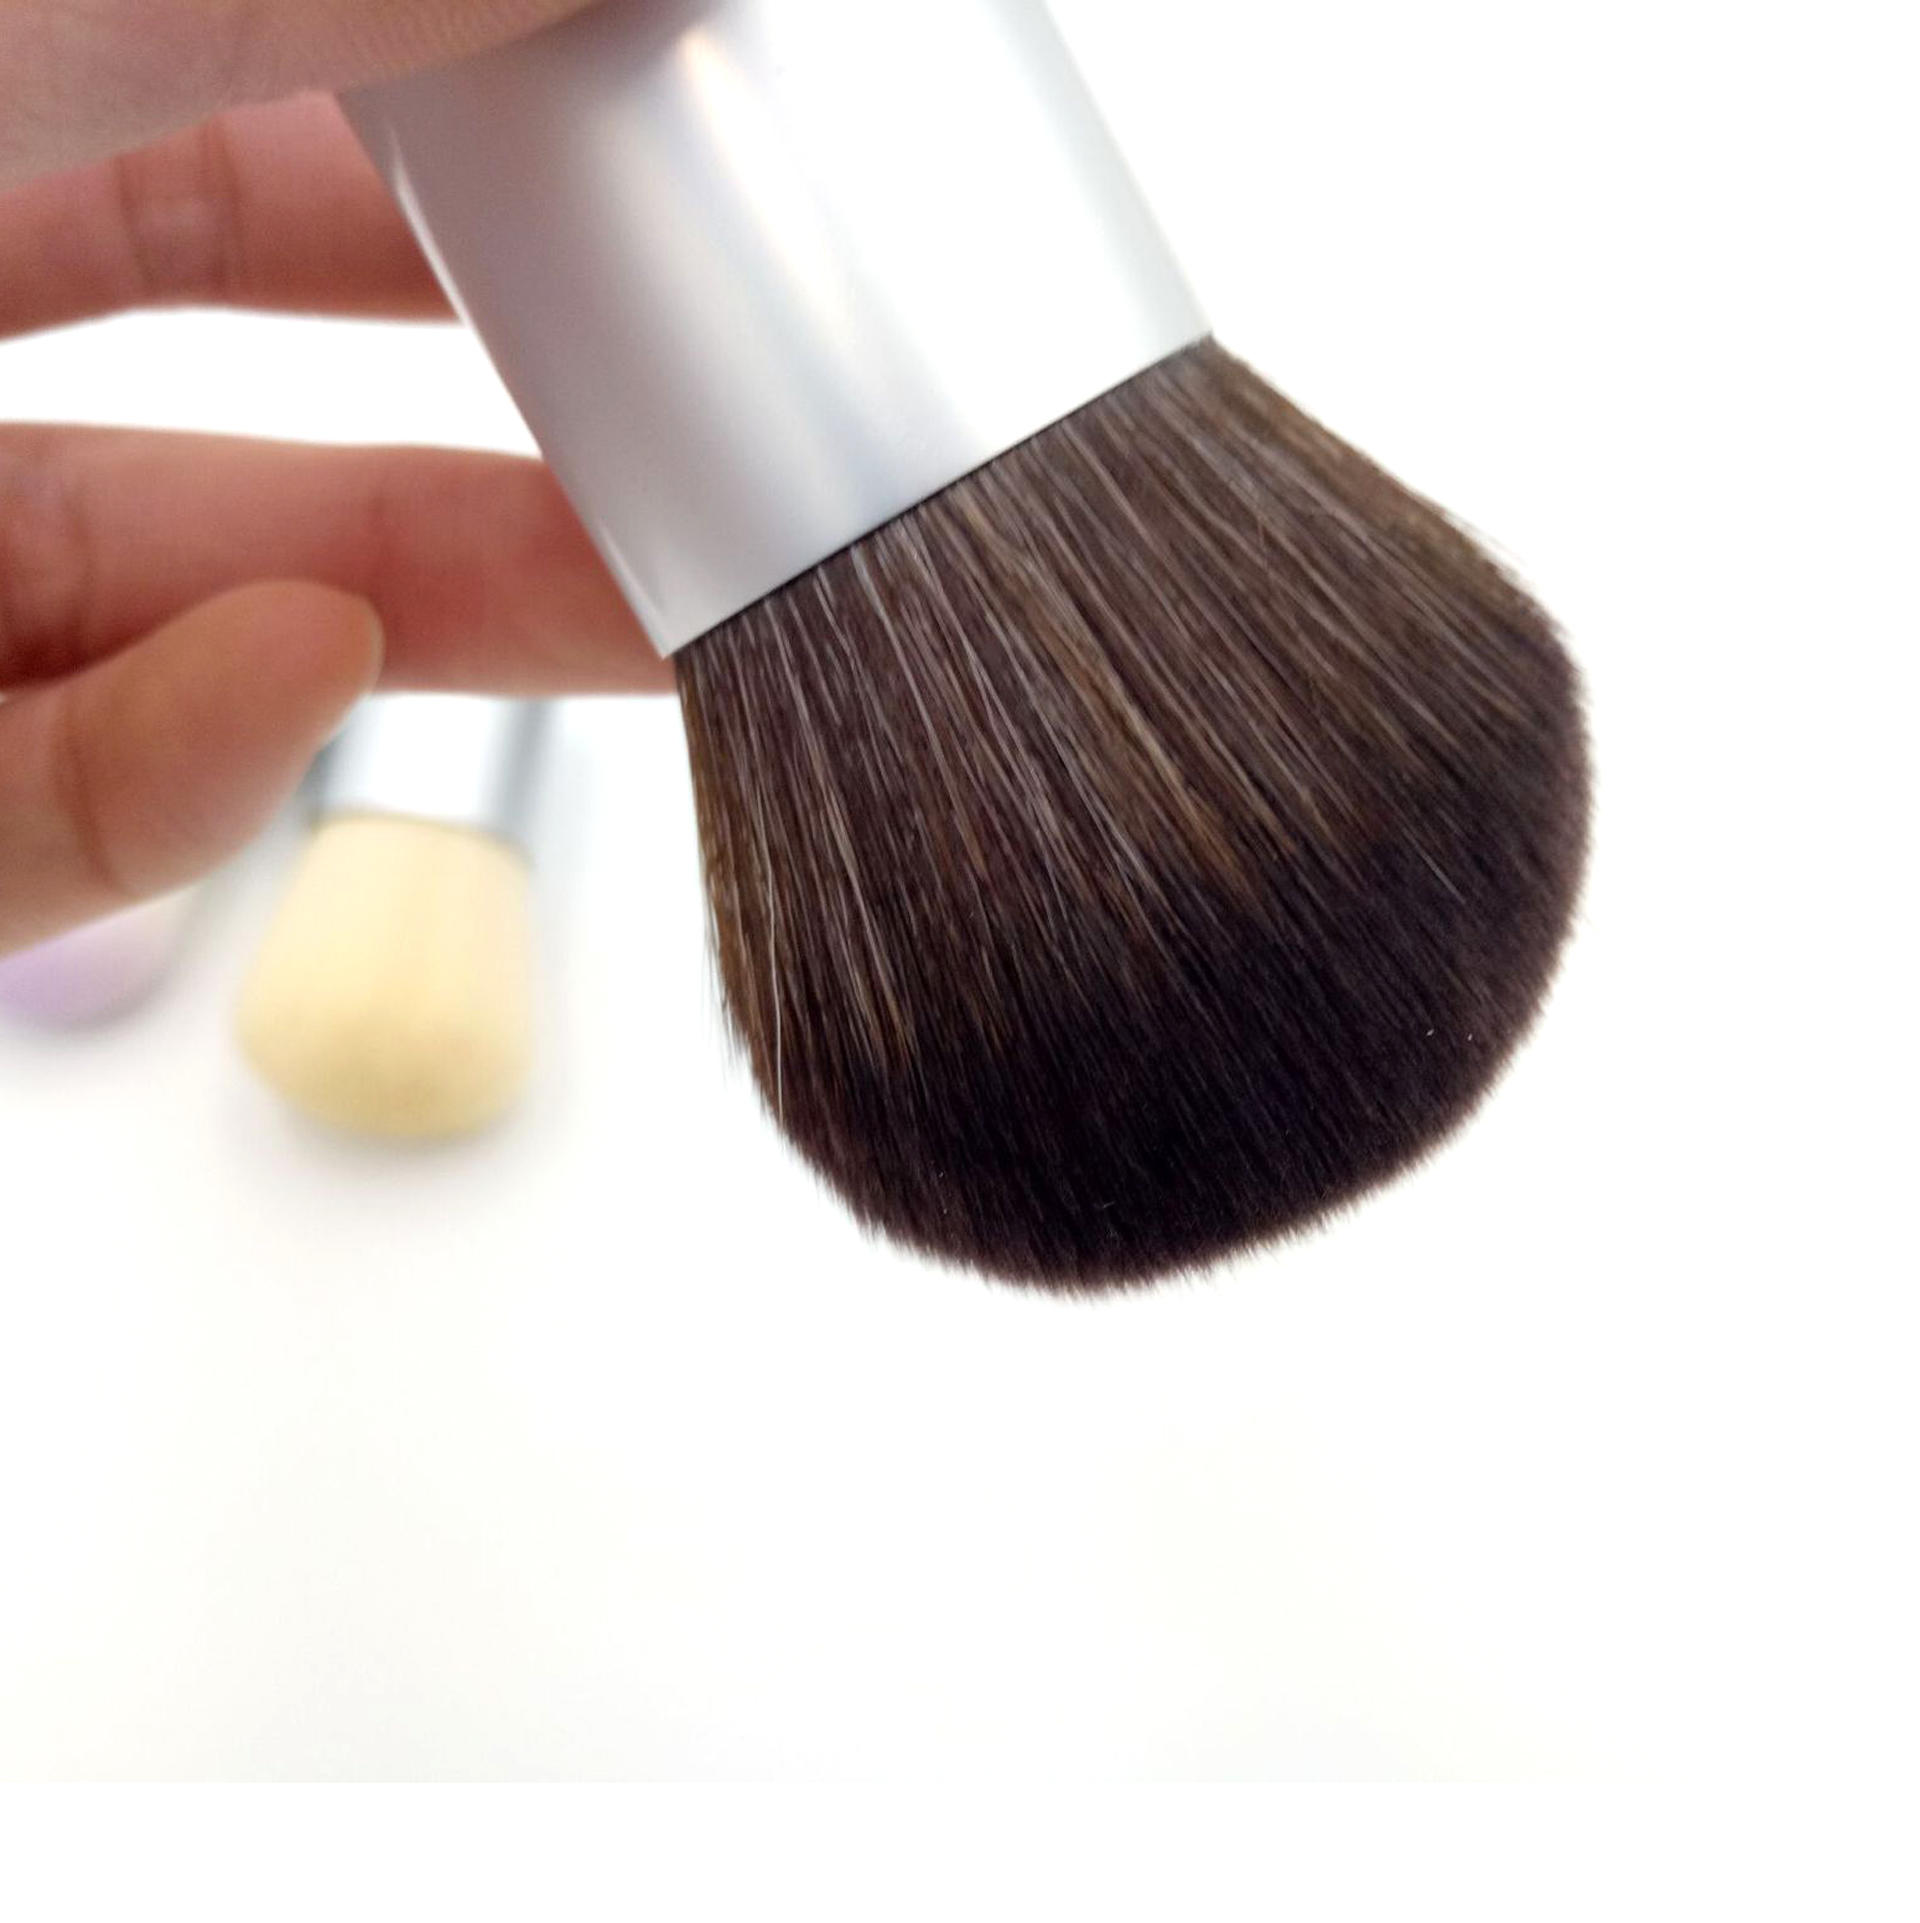 High Quality Professional Big vegan Makeup Loose powder Blush Kabuki brush